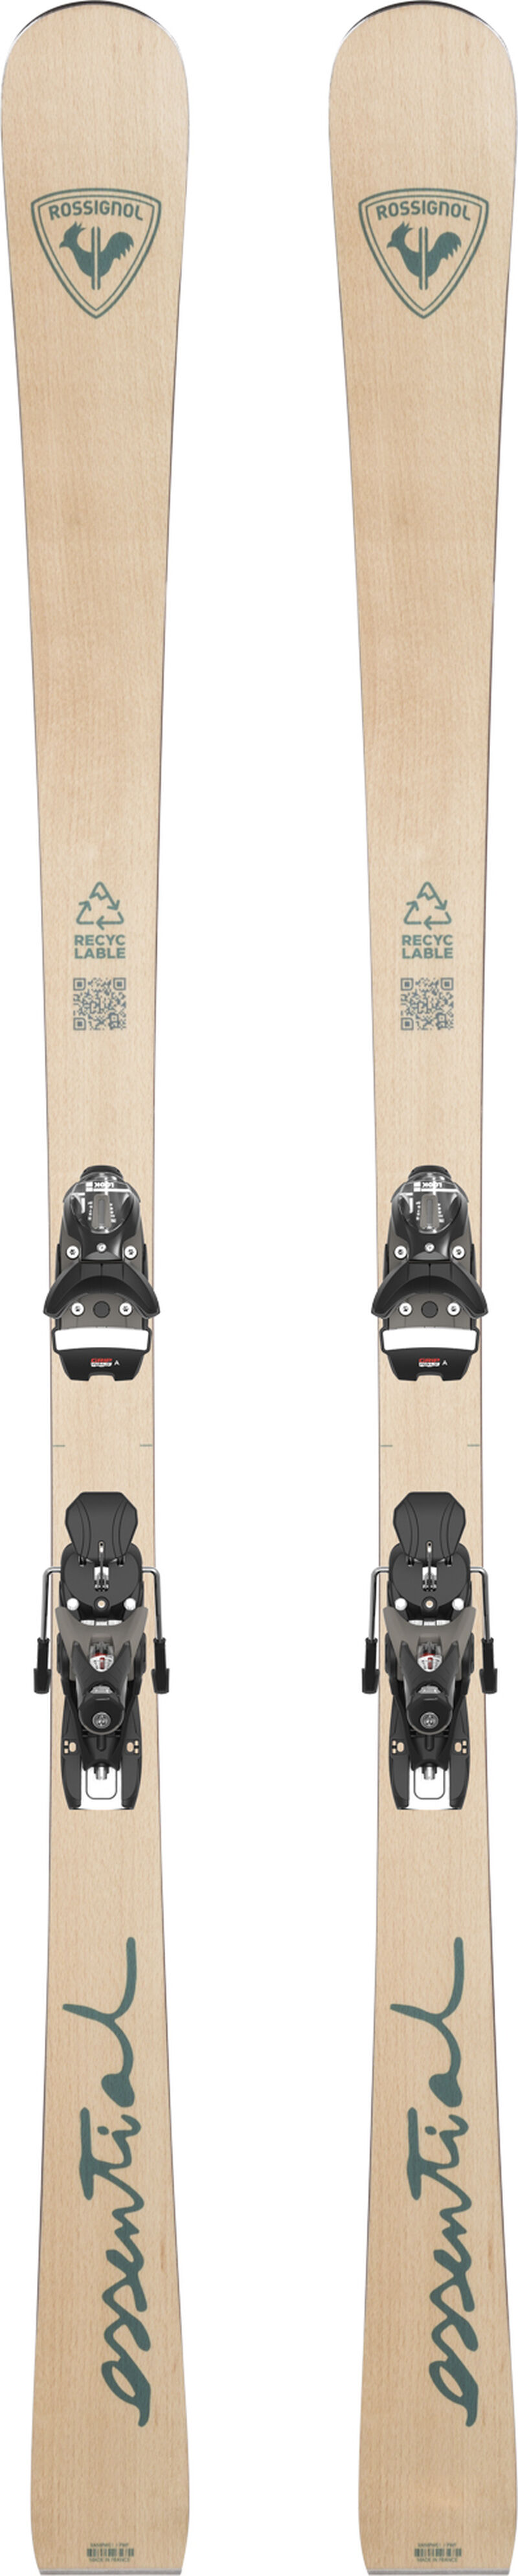 Test Rossignol TACTIC Housse Ski 2 Paires